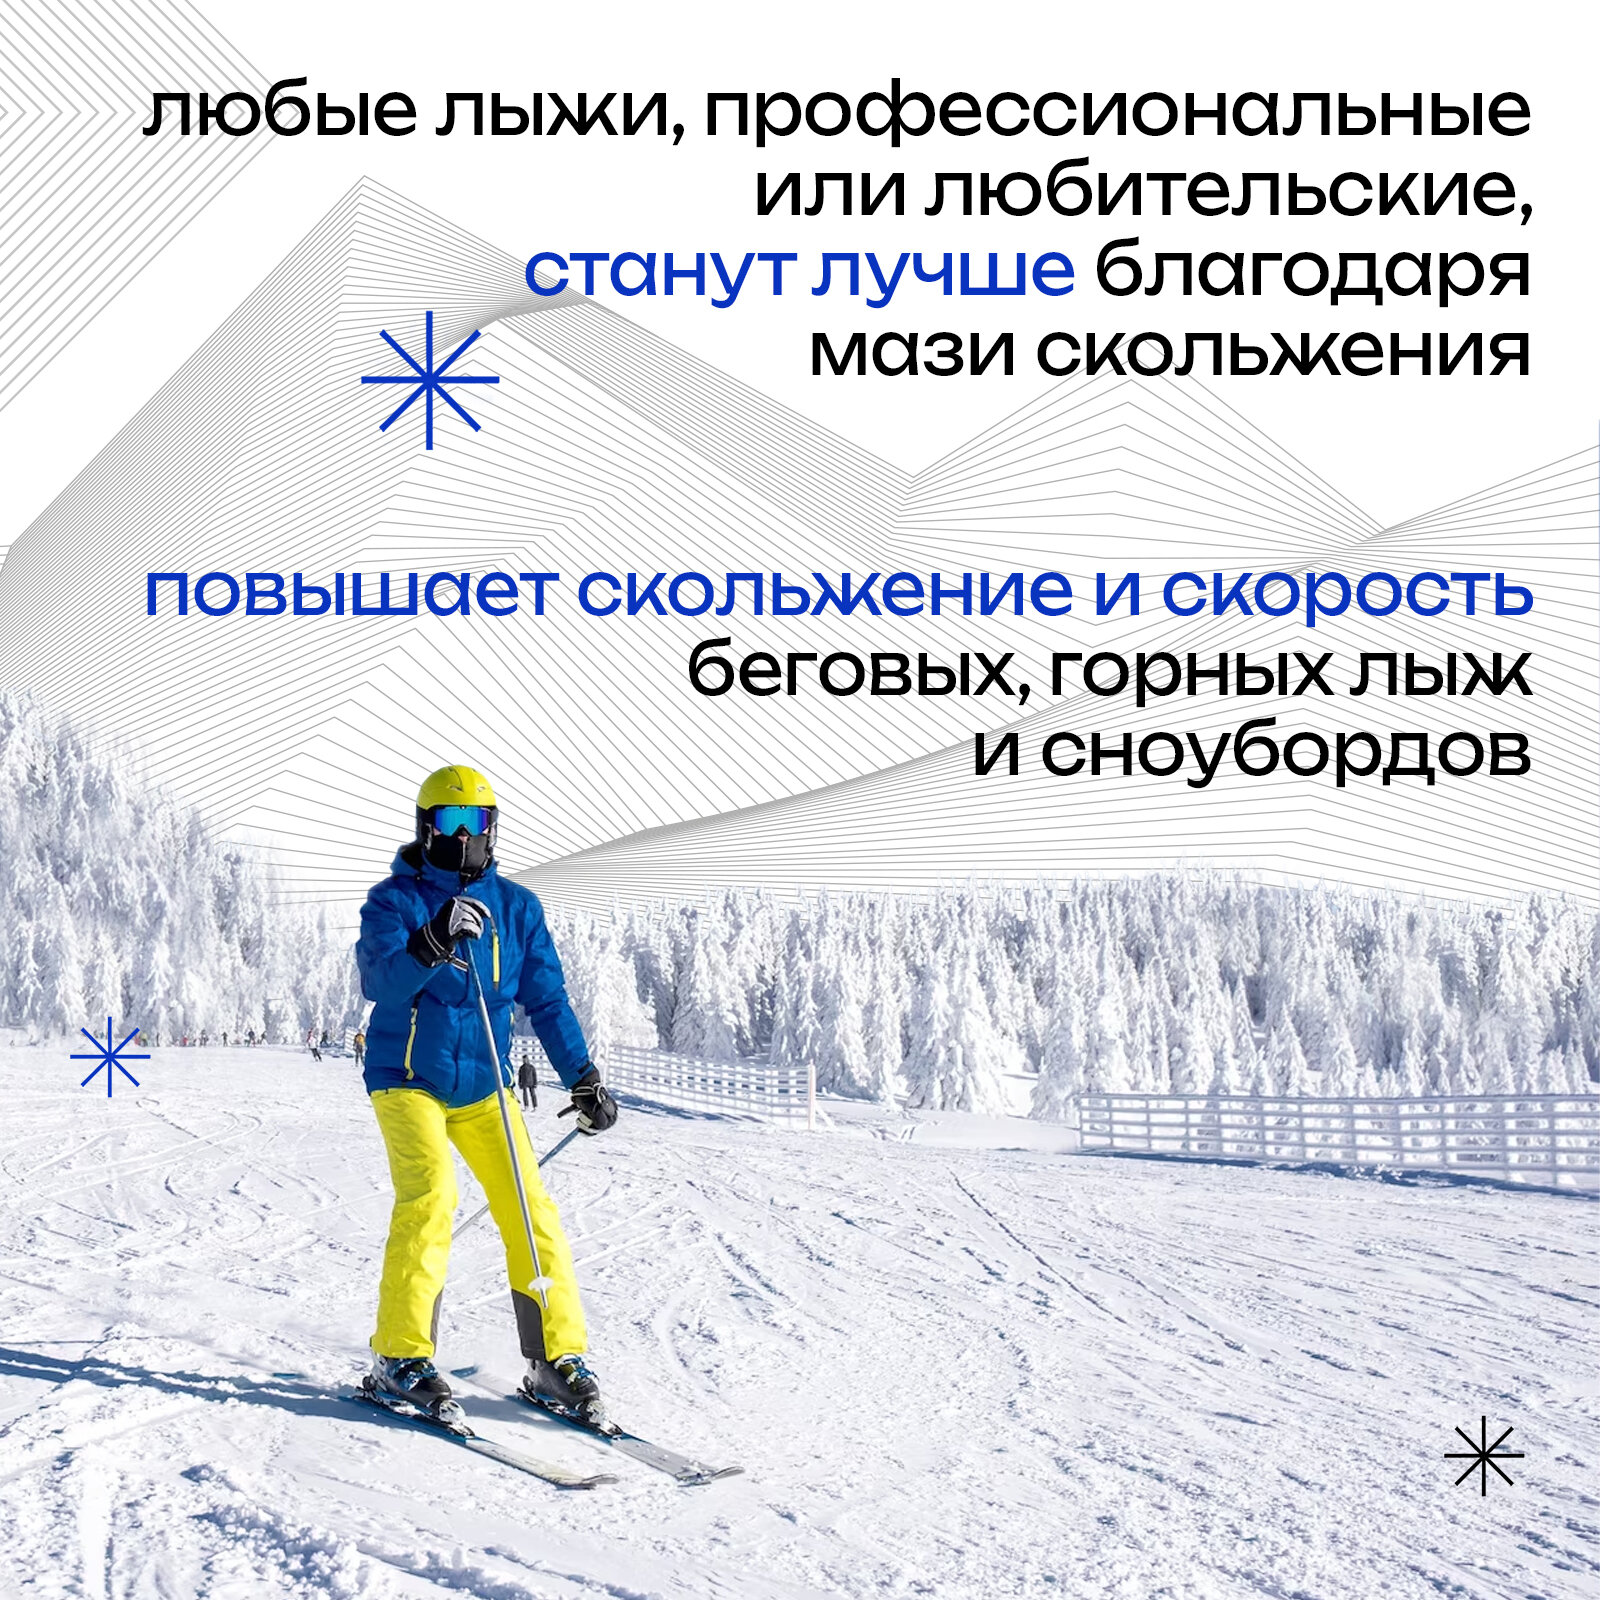 Мазь лыжная Sprint Pro зеленая -12... -30, 60 г - фото №4